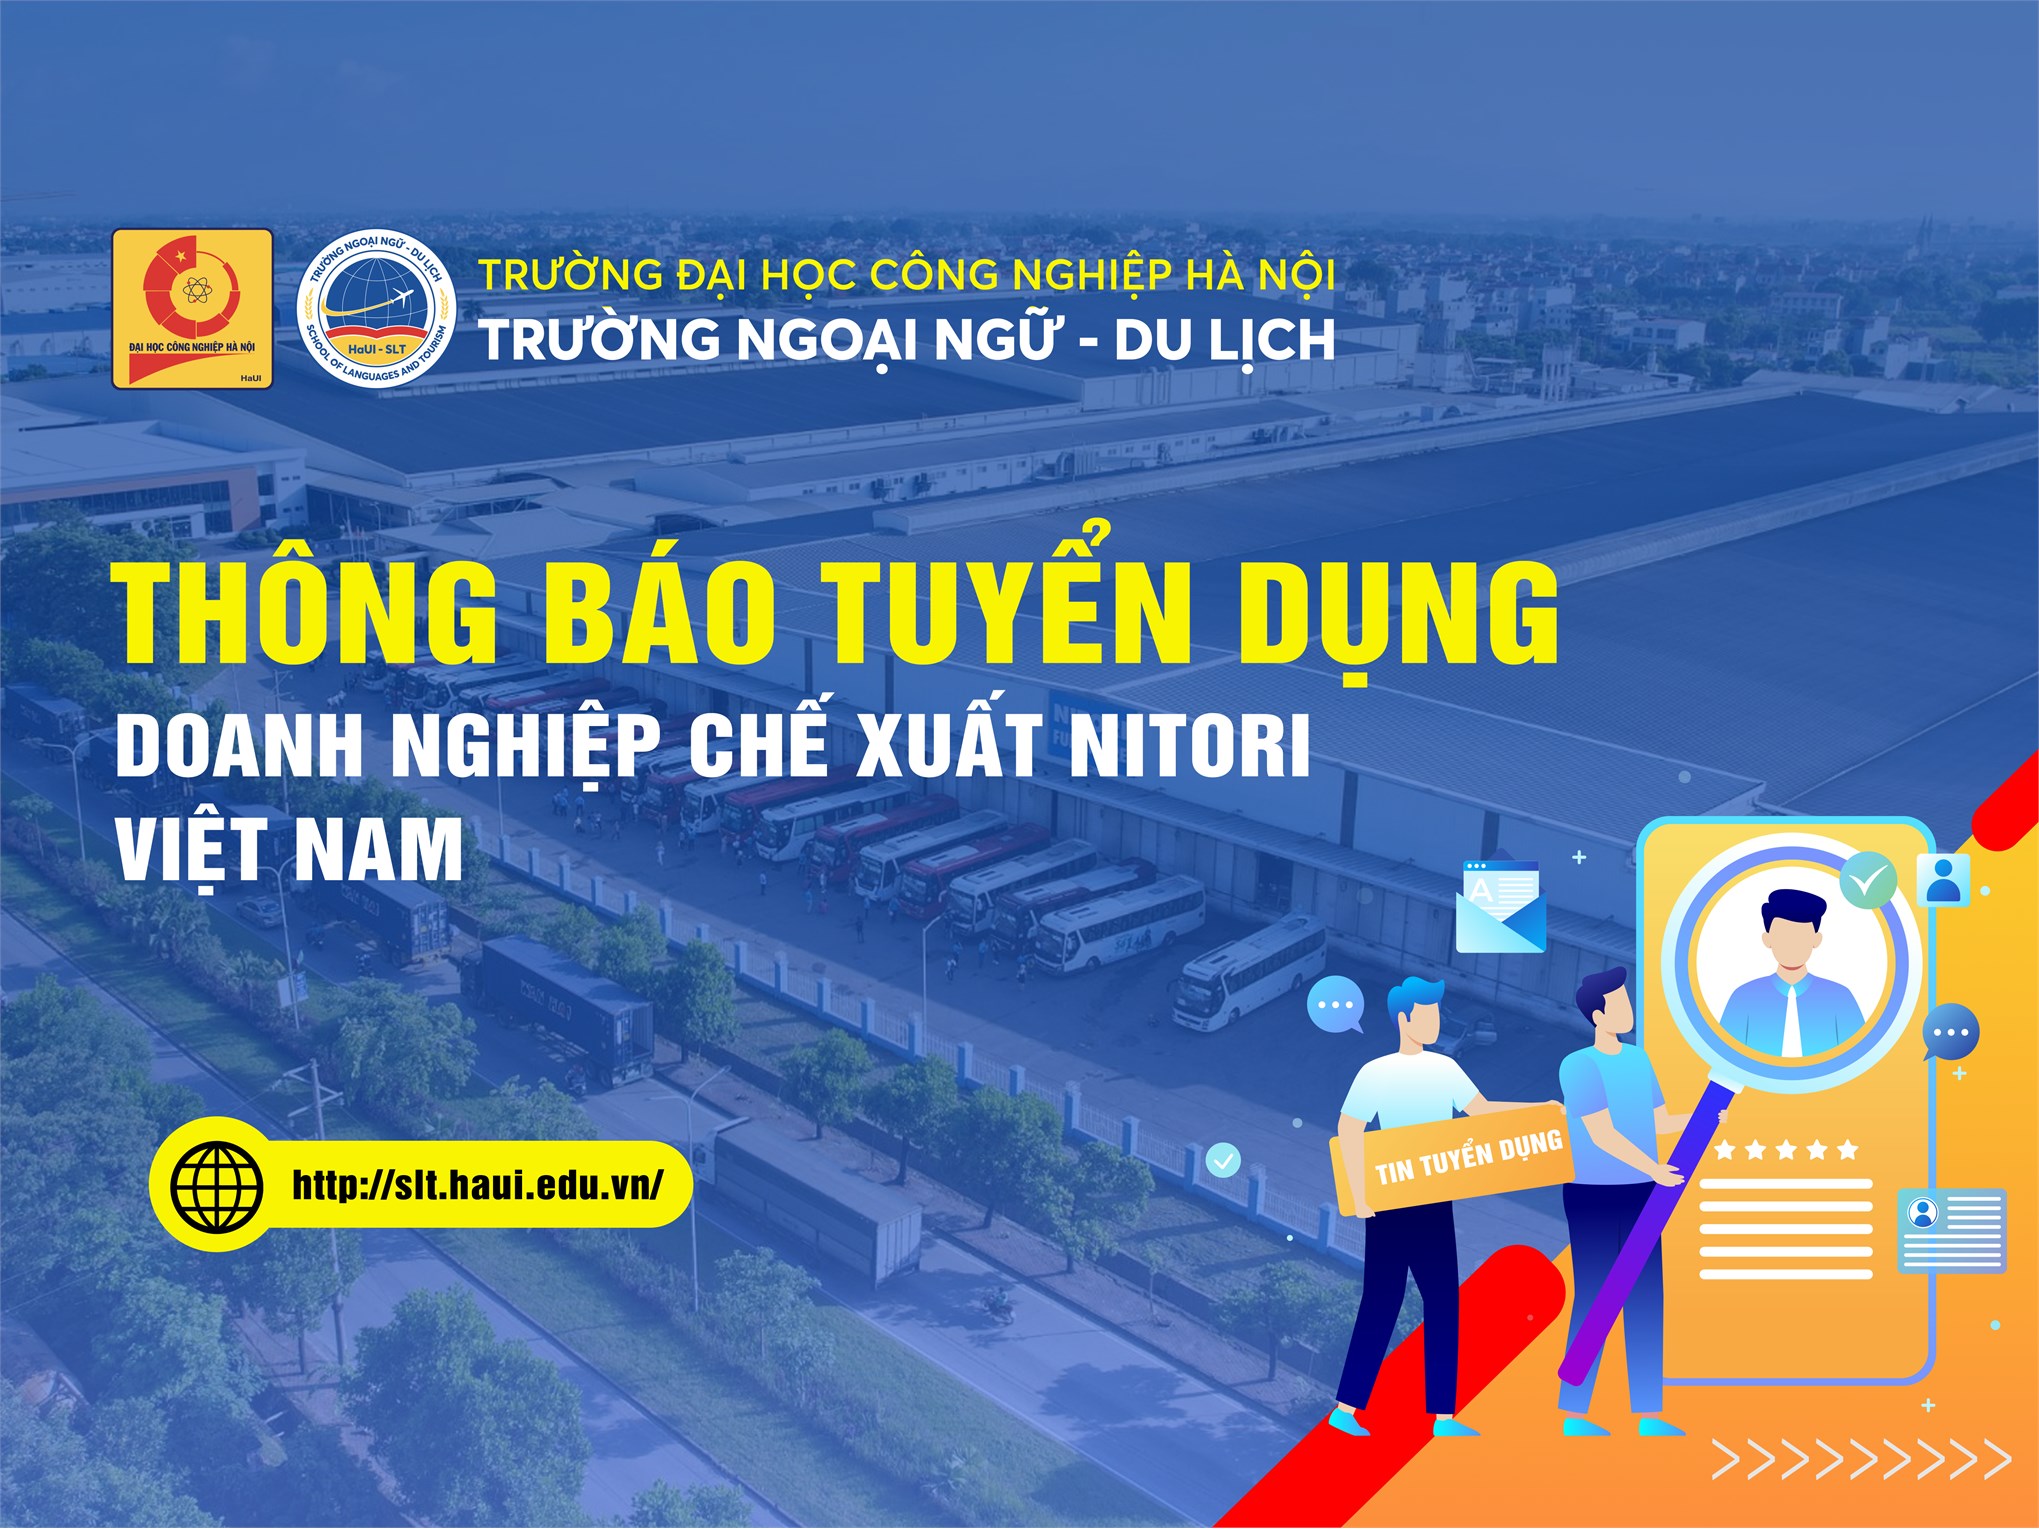 Doanh nghiệp chế xuất Nitori Việt Nam thông báo tuyển dụng